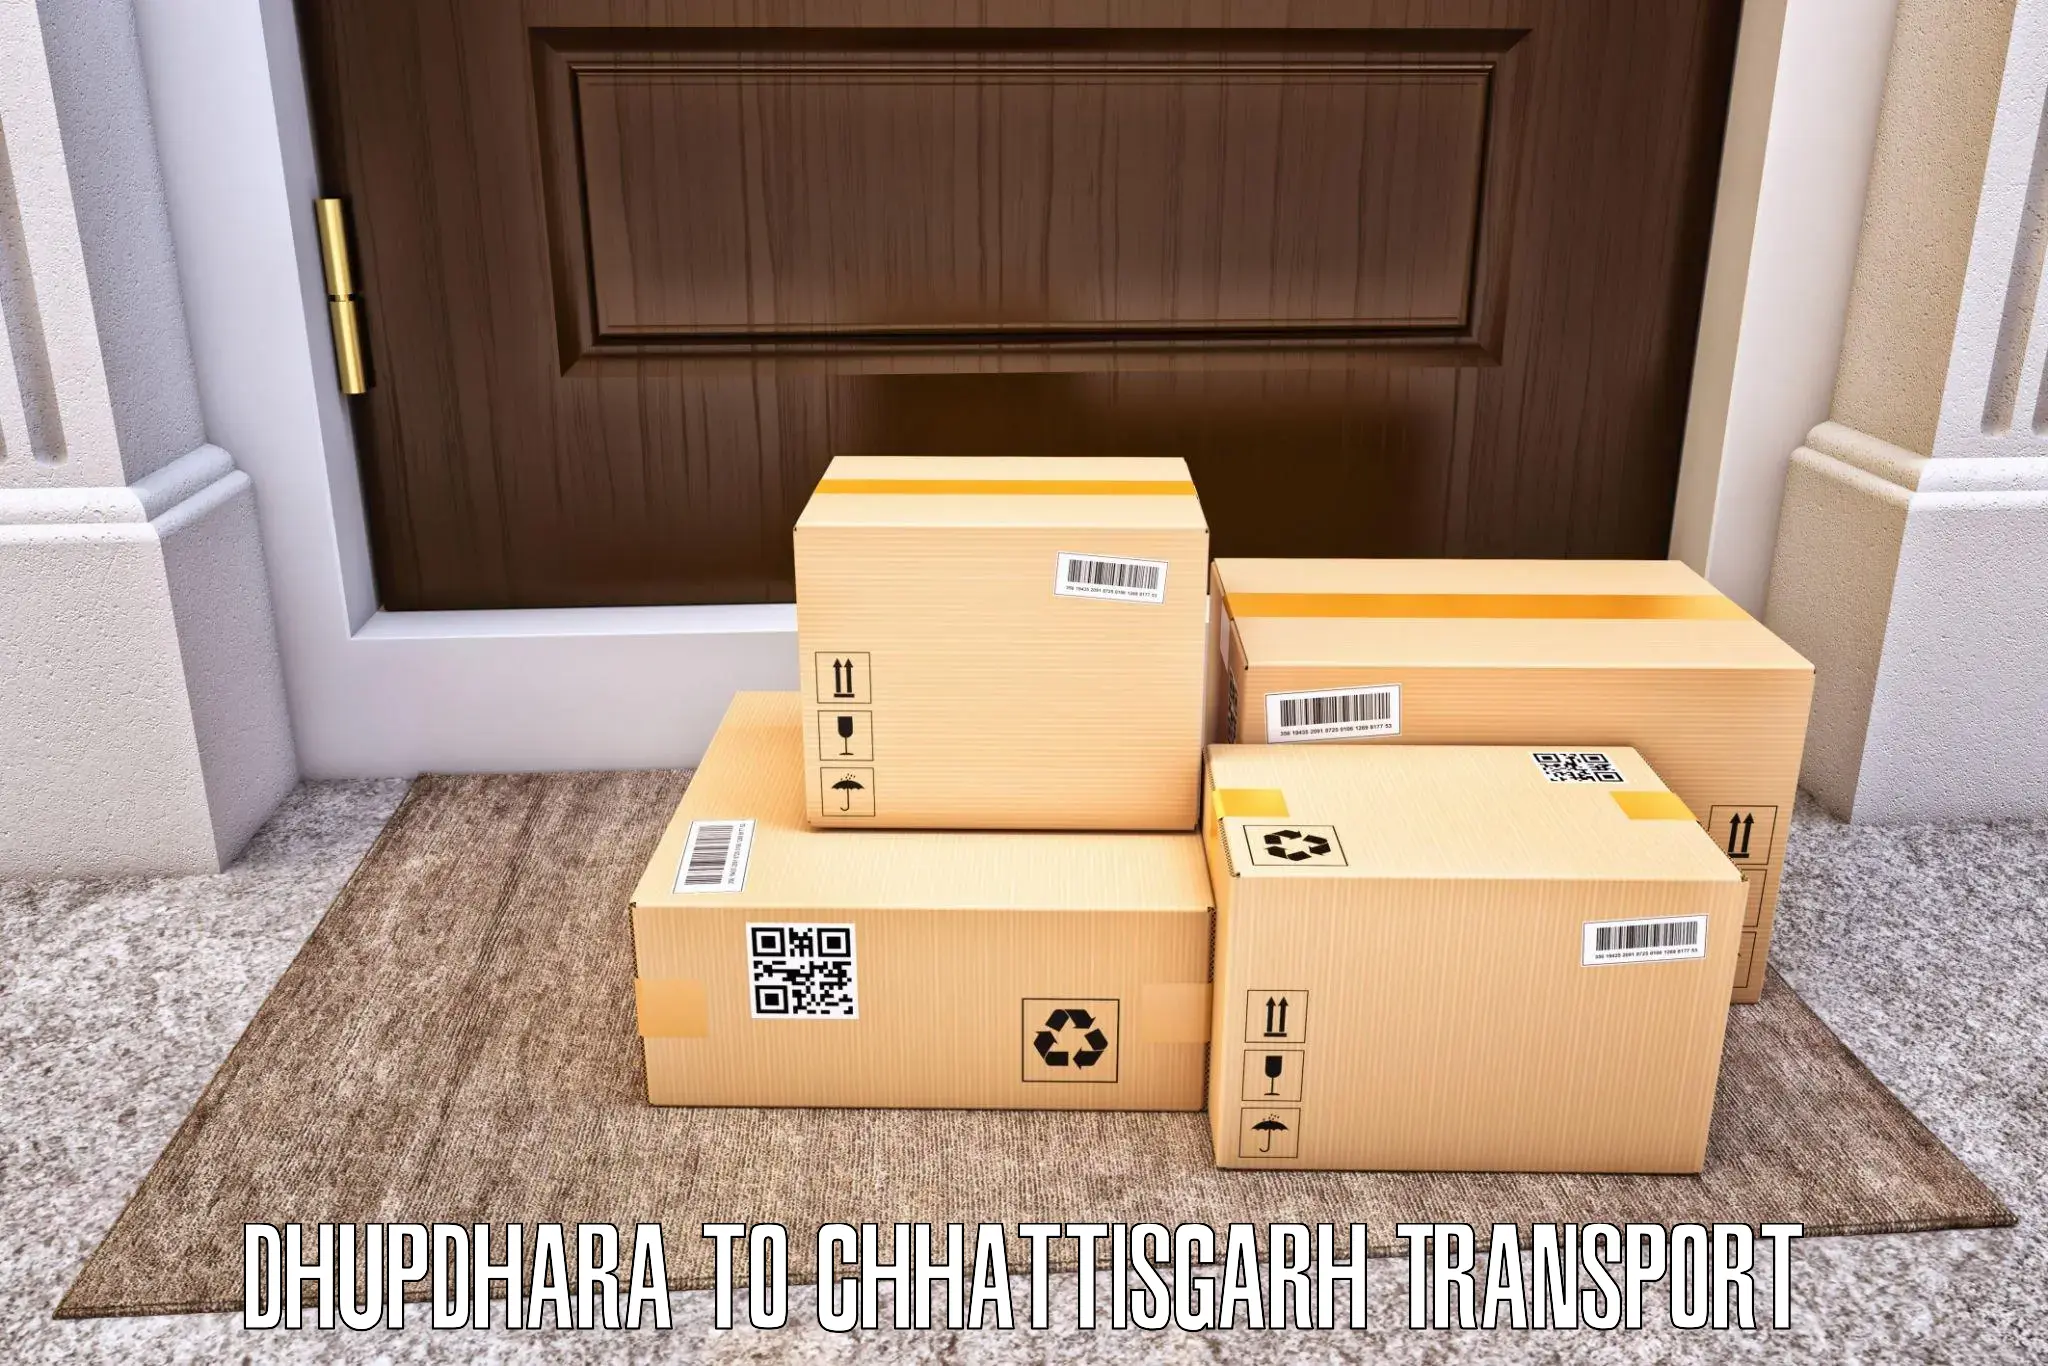 Daily parcel service transport Dhupdhara to Sakti